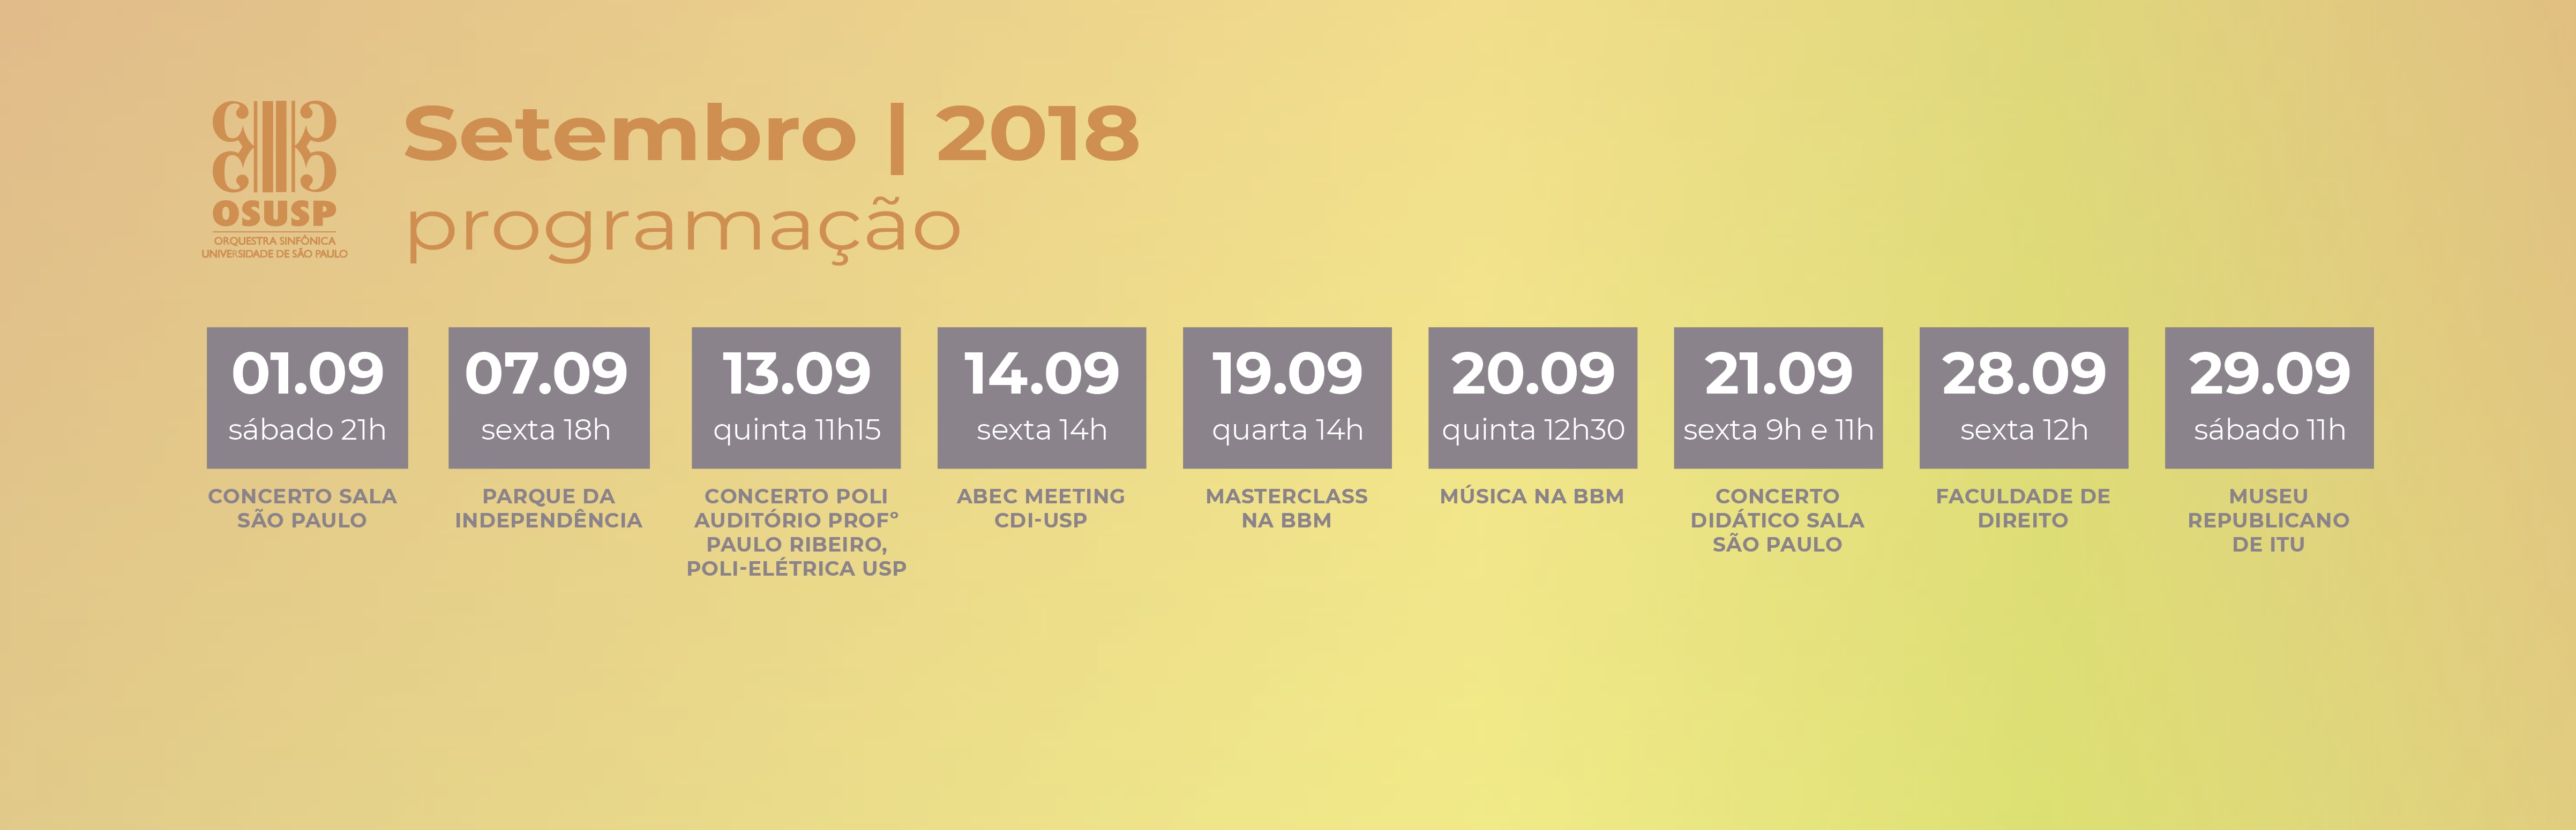 (Português) OSUSP realiza série de concertos em setembro